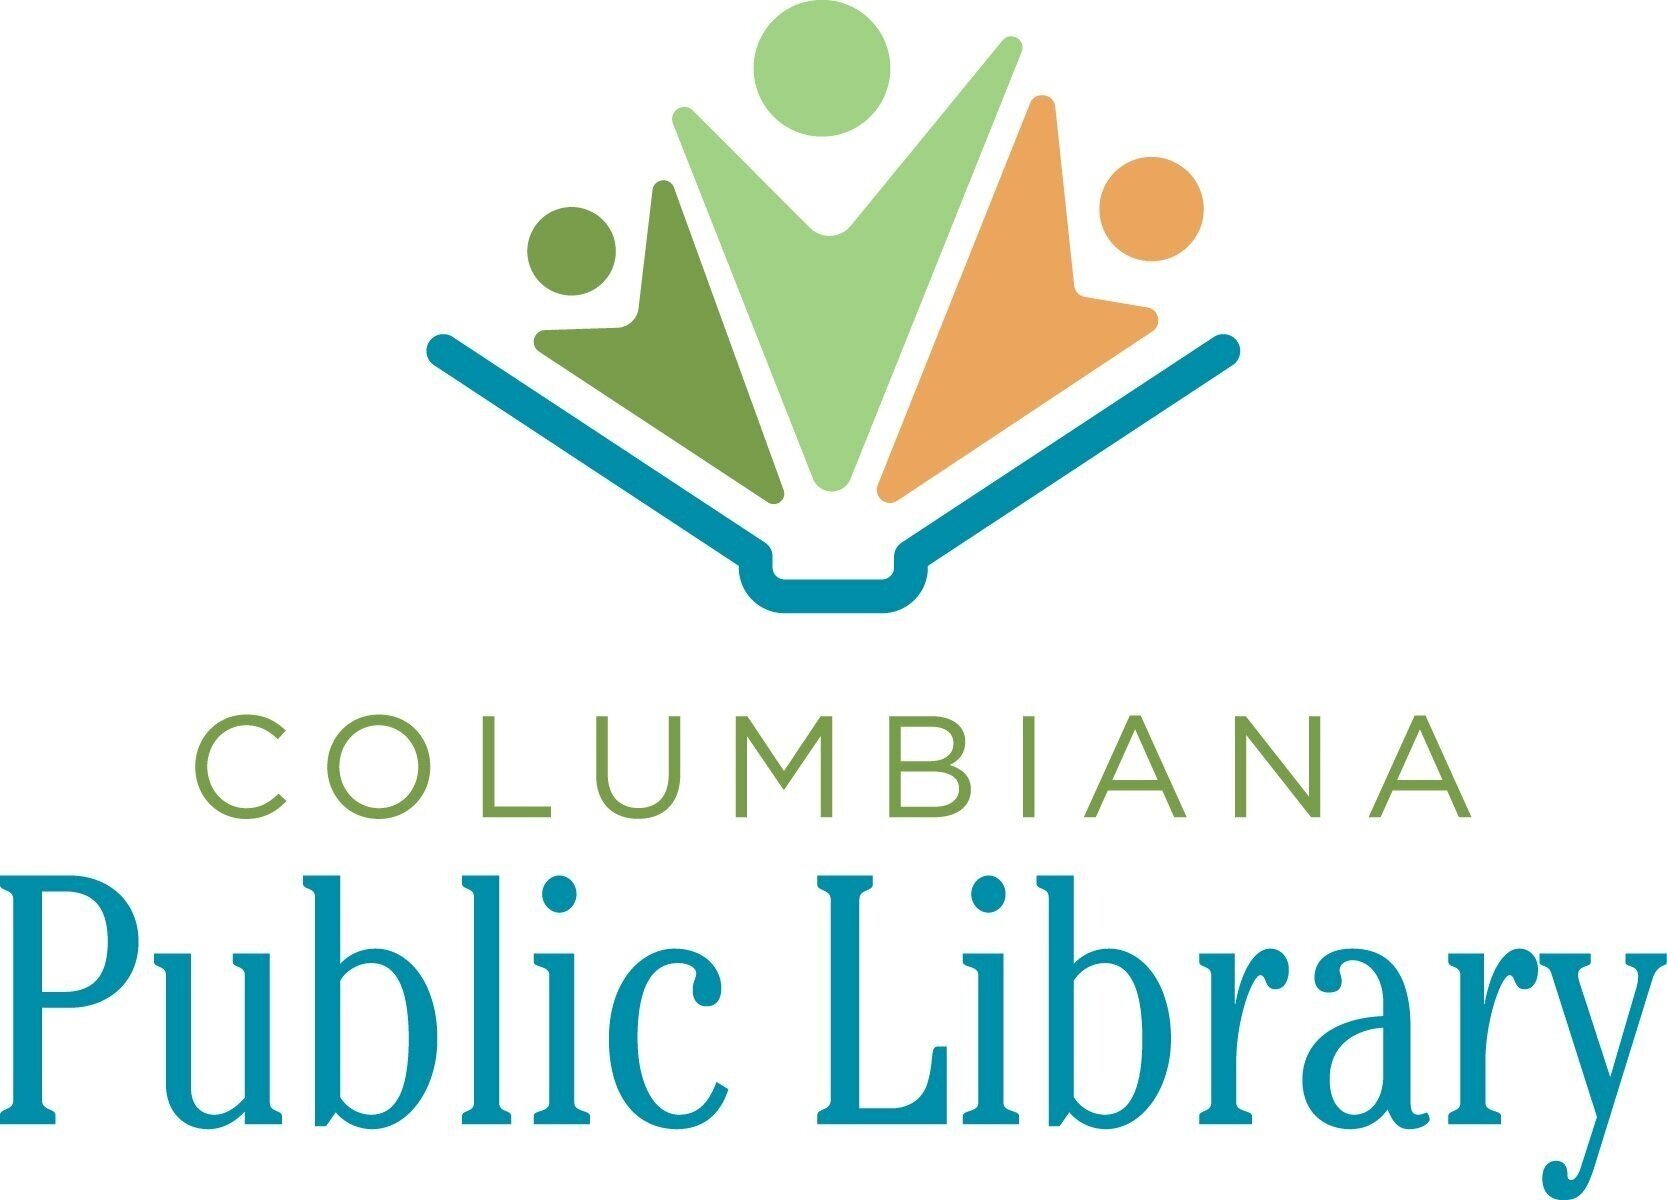 Columbiana Public Library